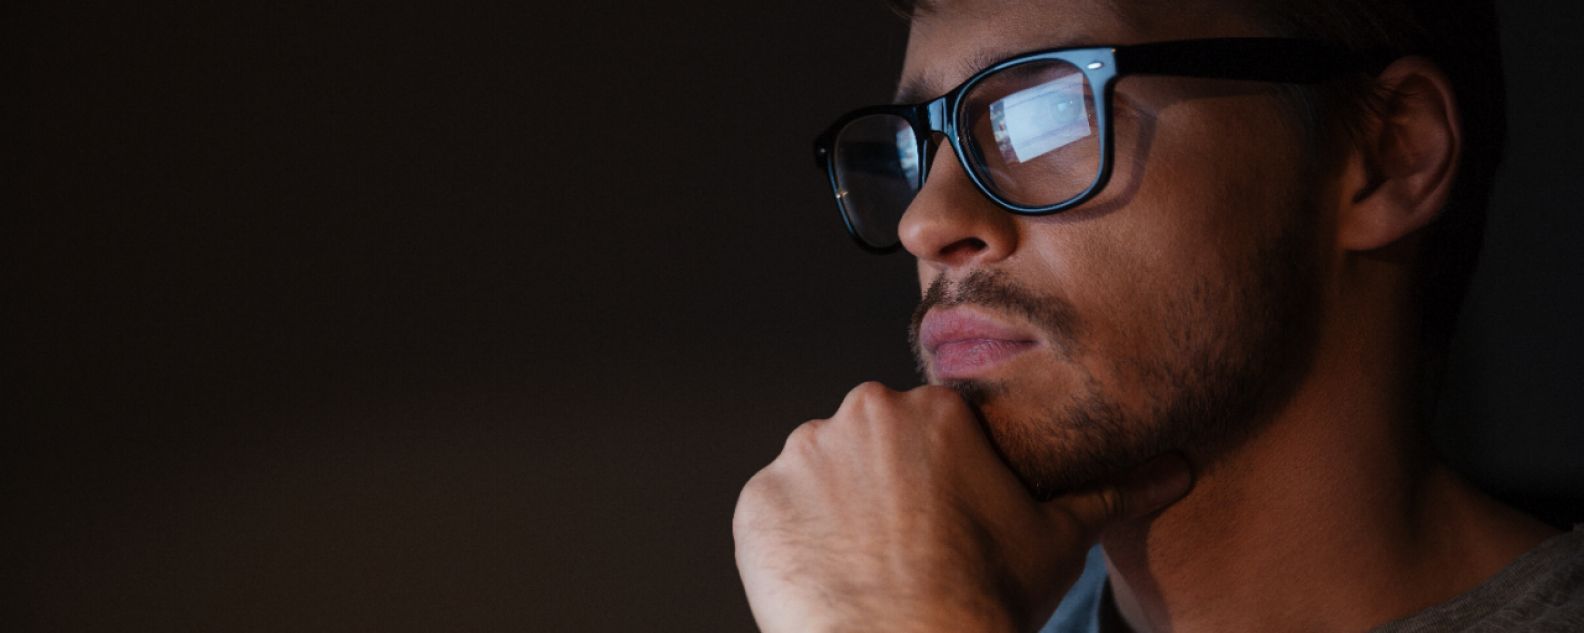 Detalhe de um homem pensativo, com a tela do computador refletida em seus óculos